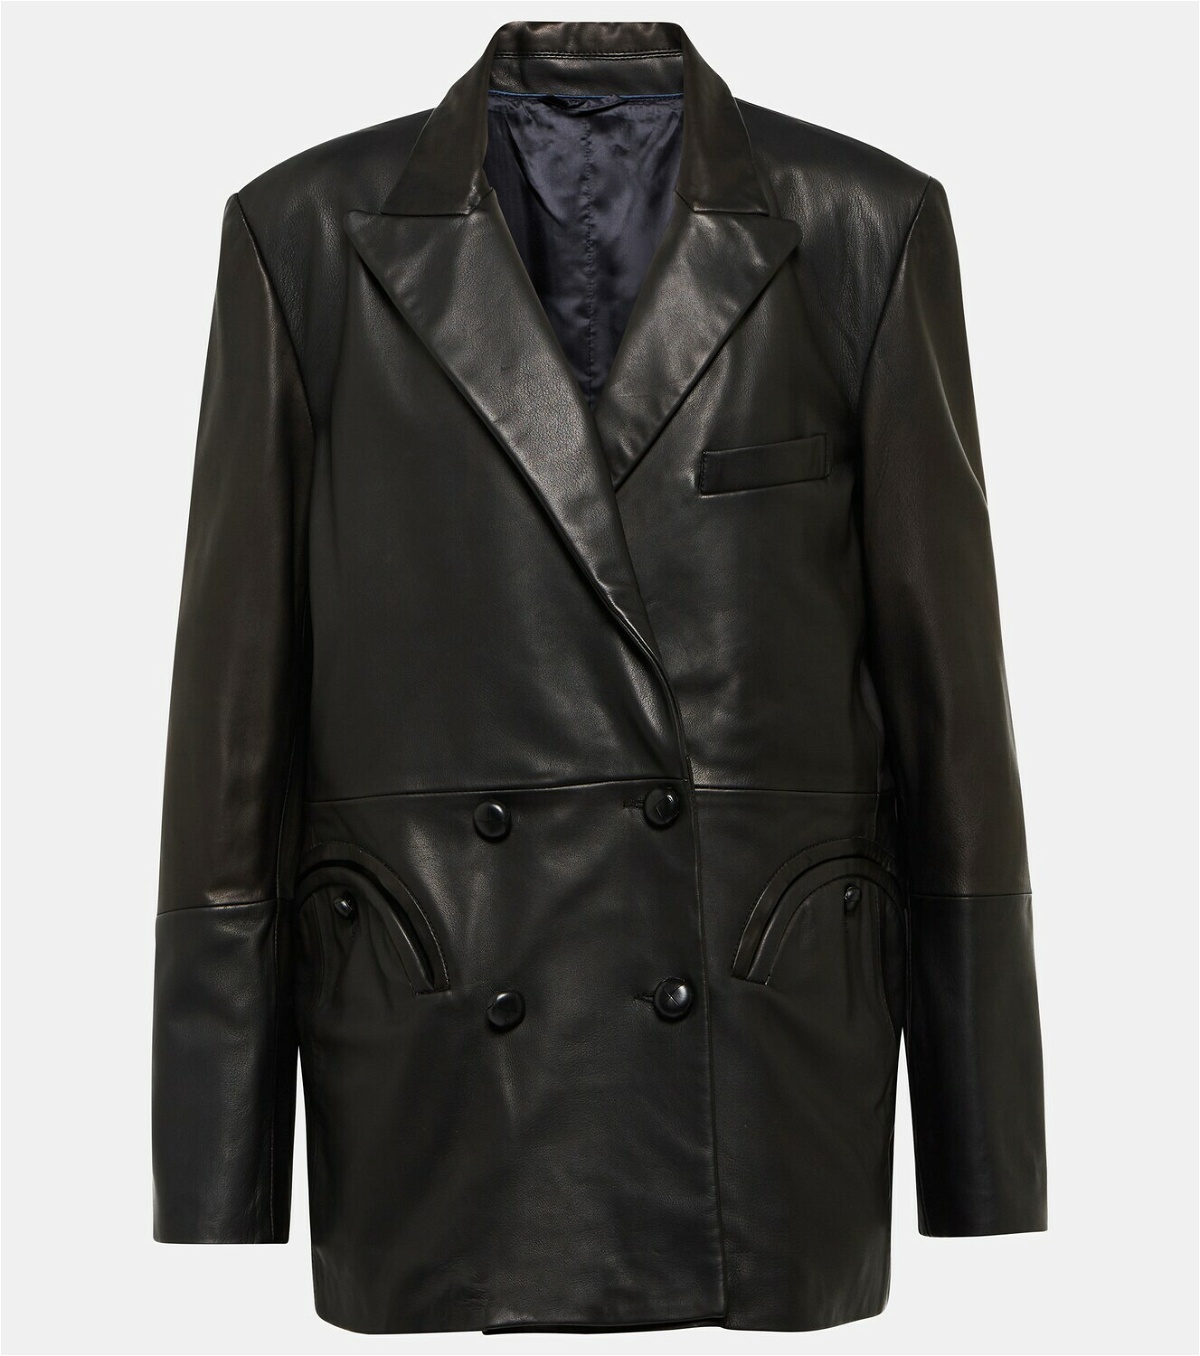 Blazé Milano Everynight leather blazer